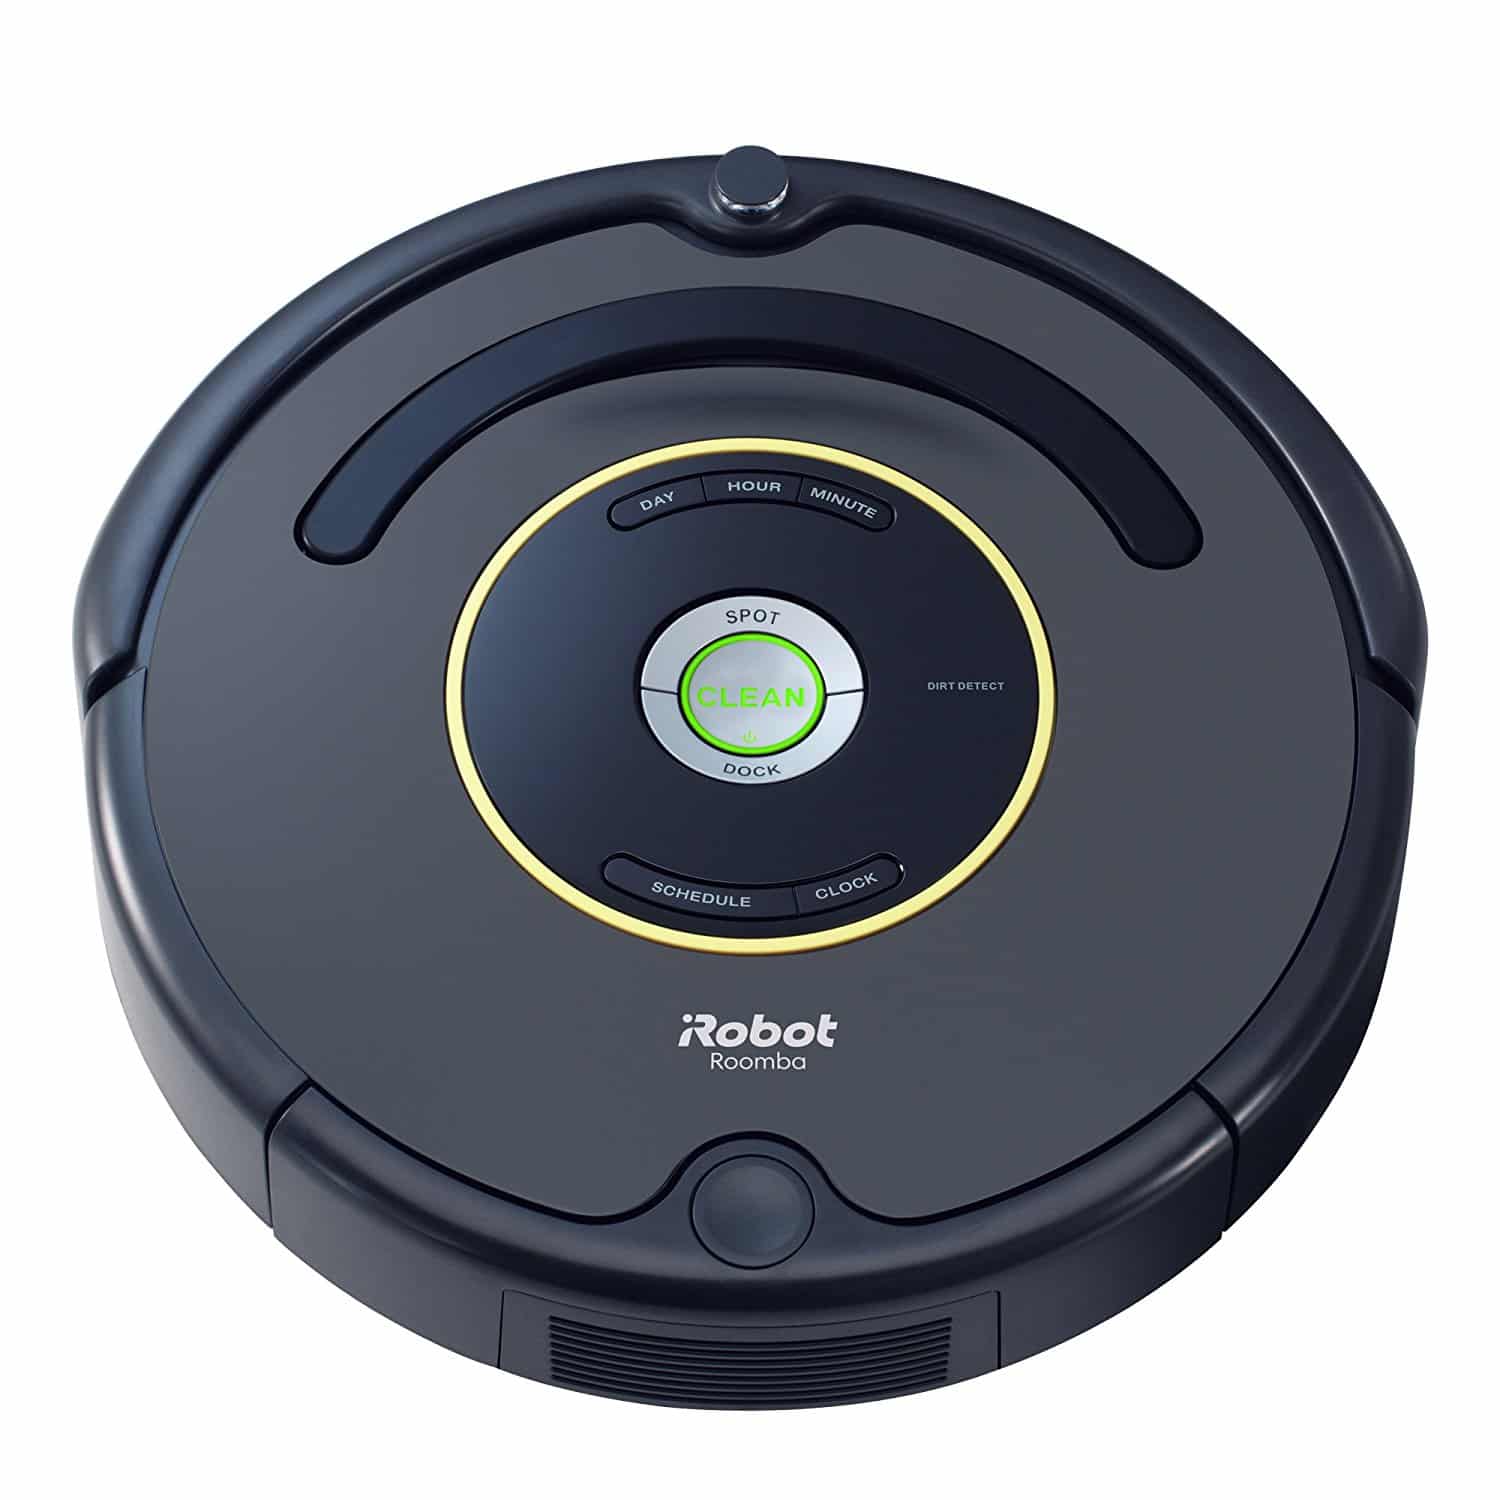 DEAL ALERT: iRobot Roomba Robotic Vacuum Cleaner – 33% off!